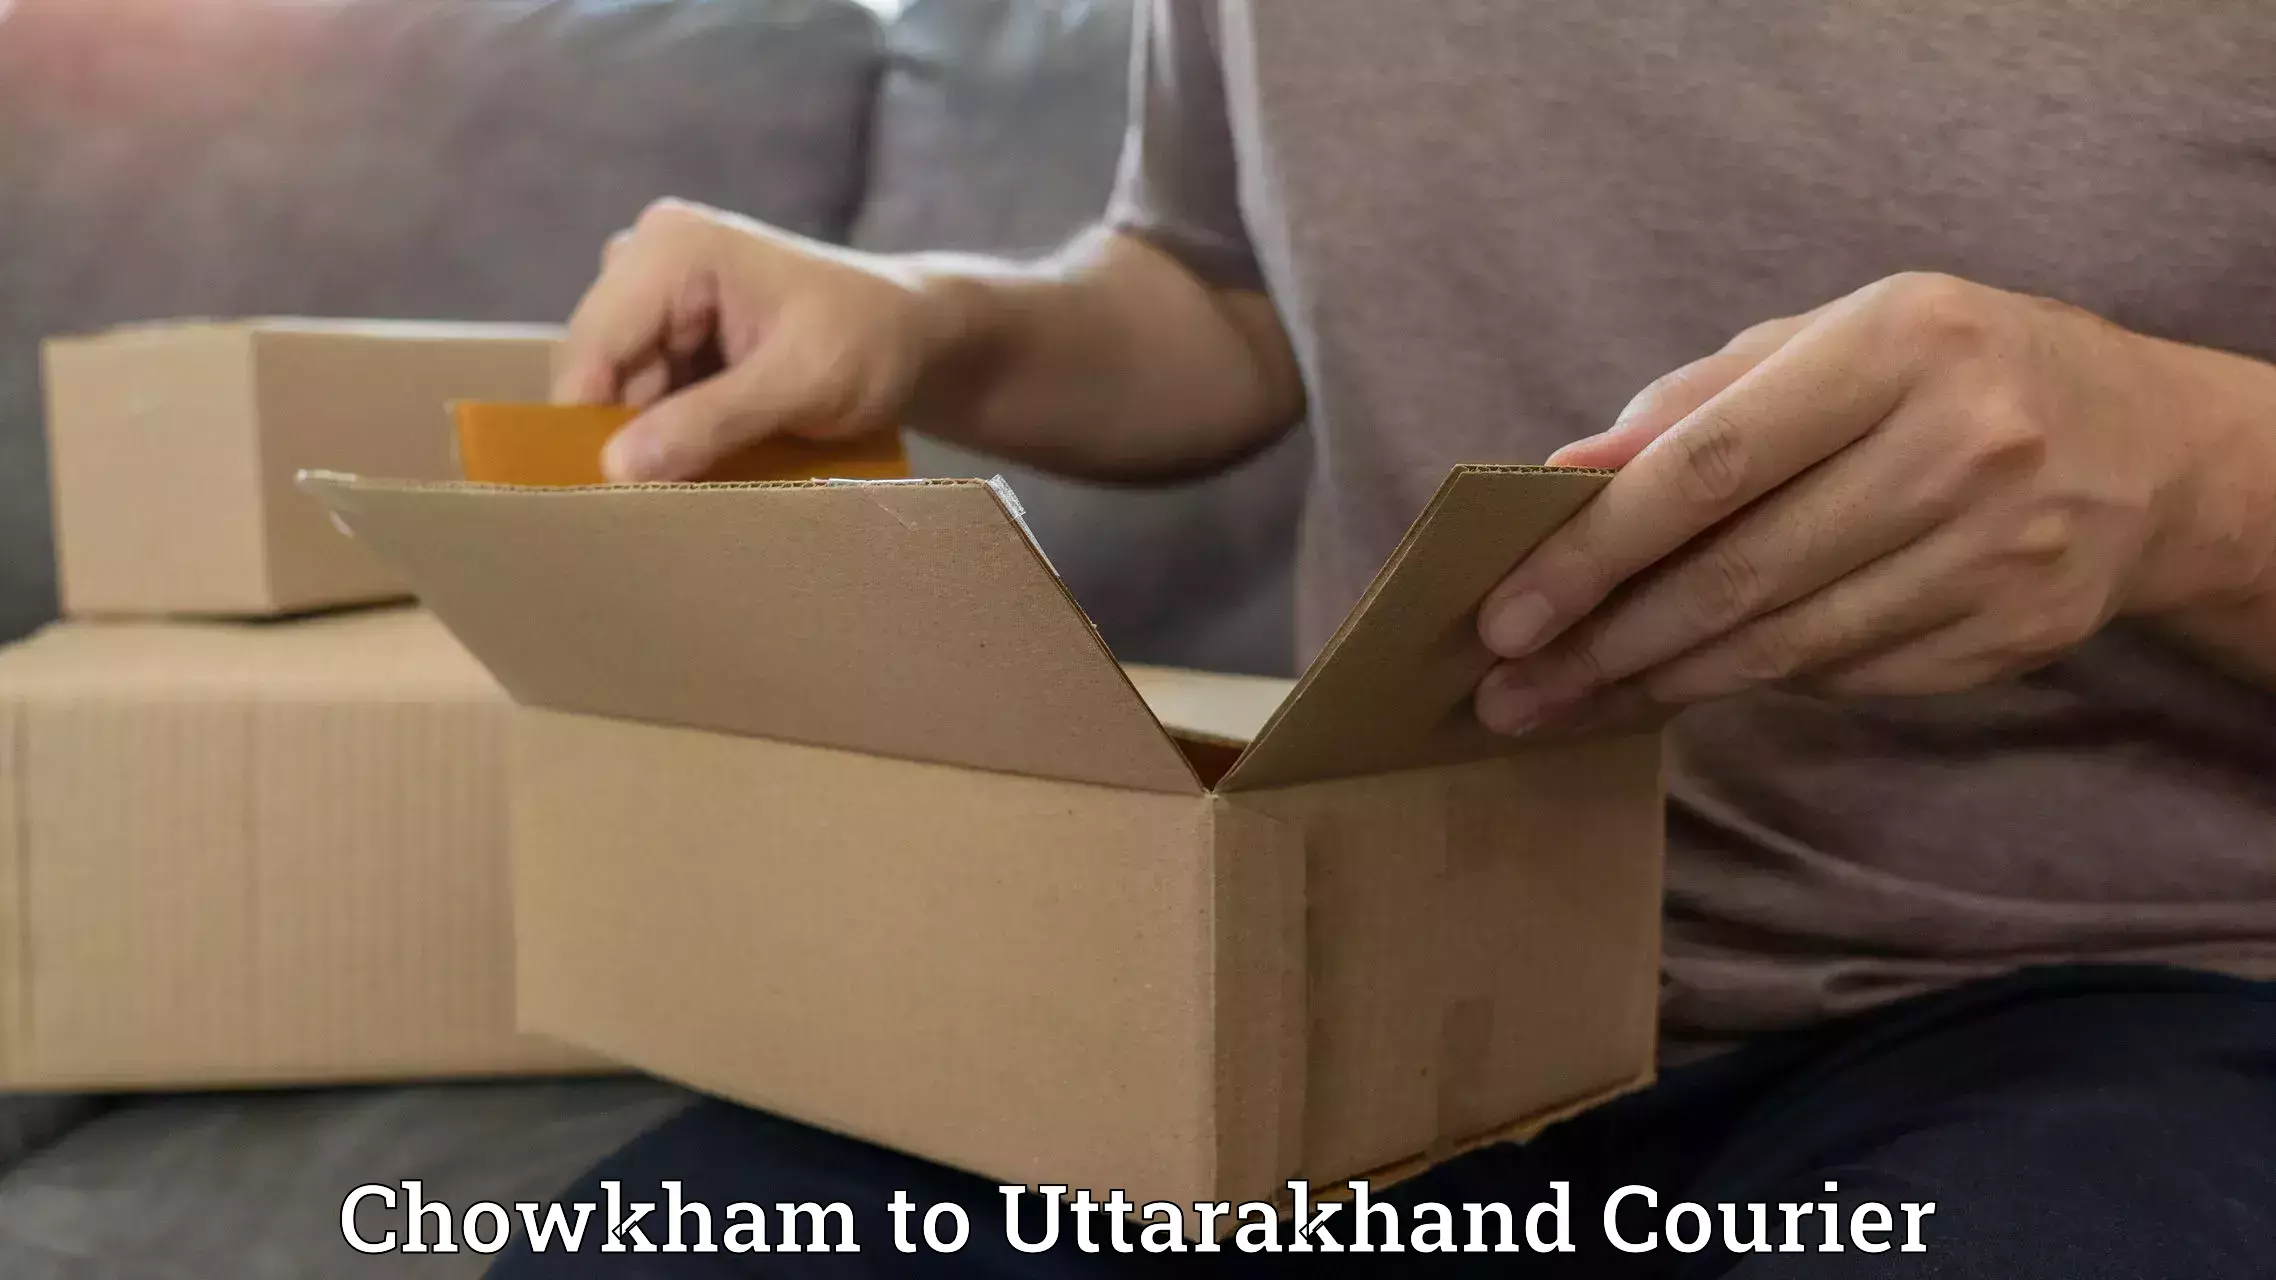 Speedy delivery service Chowkham to Uttarakhand